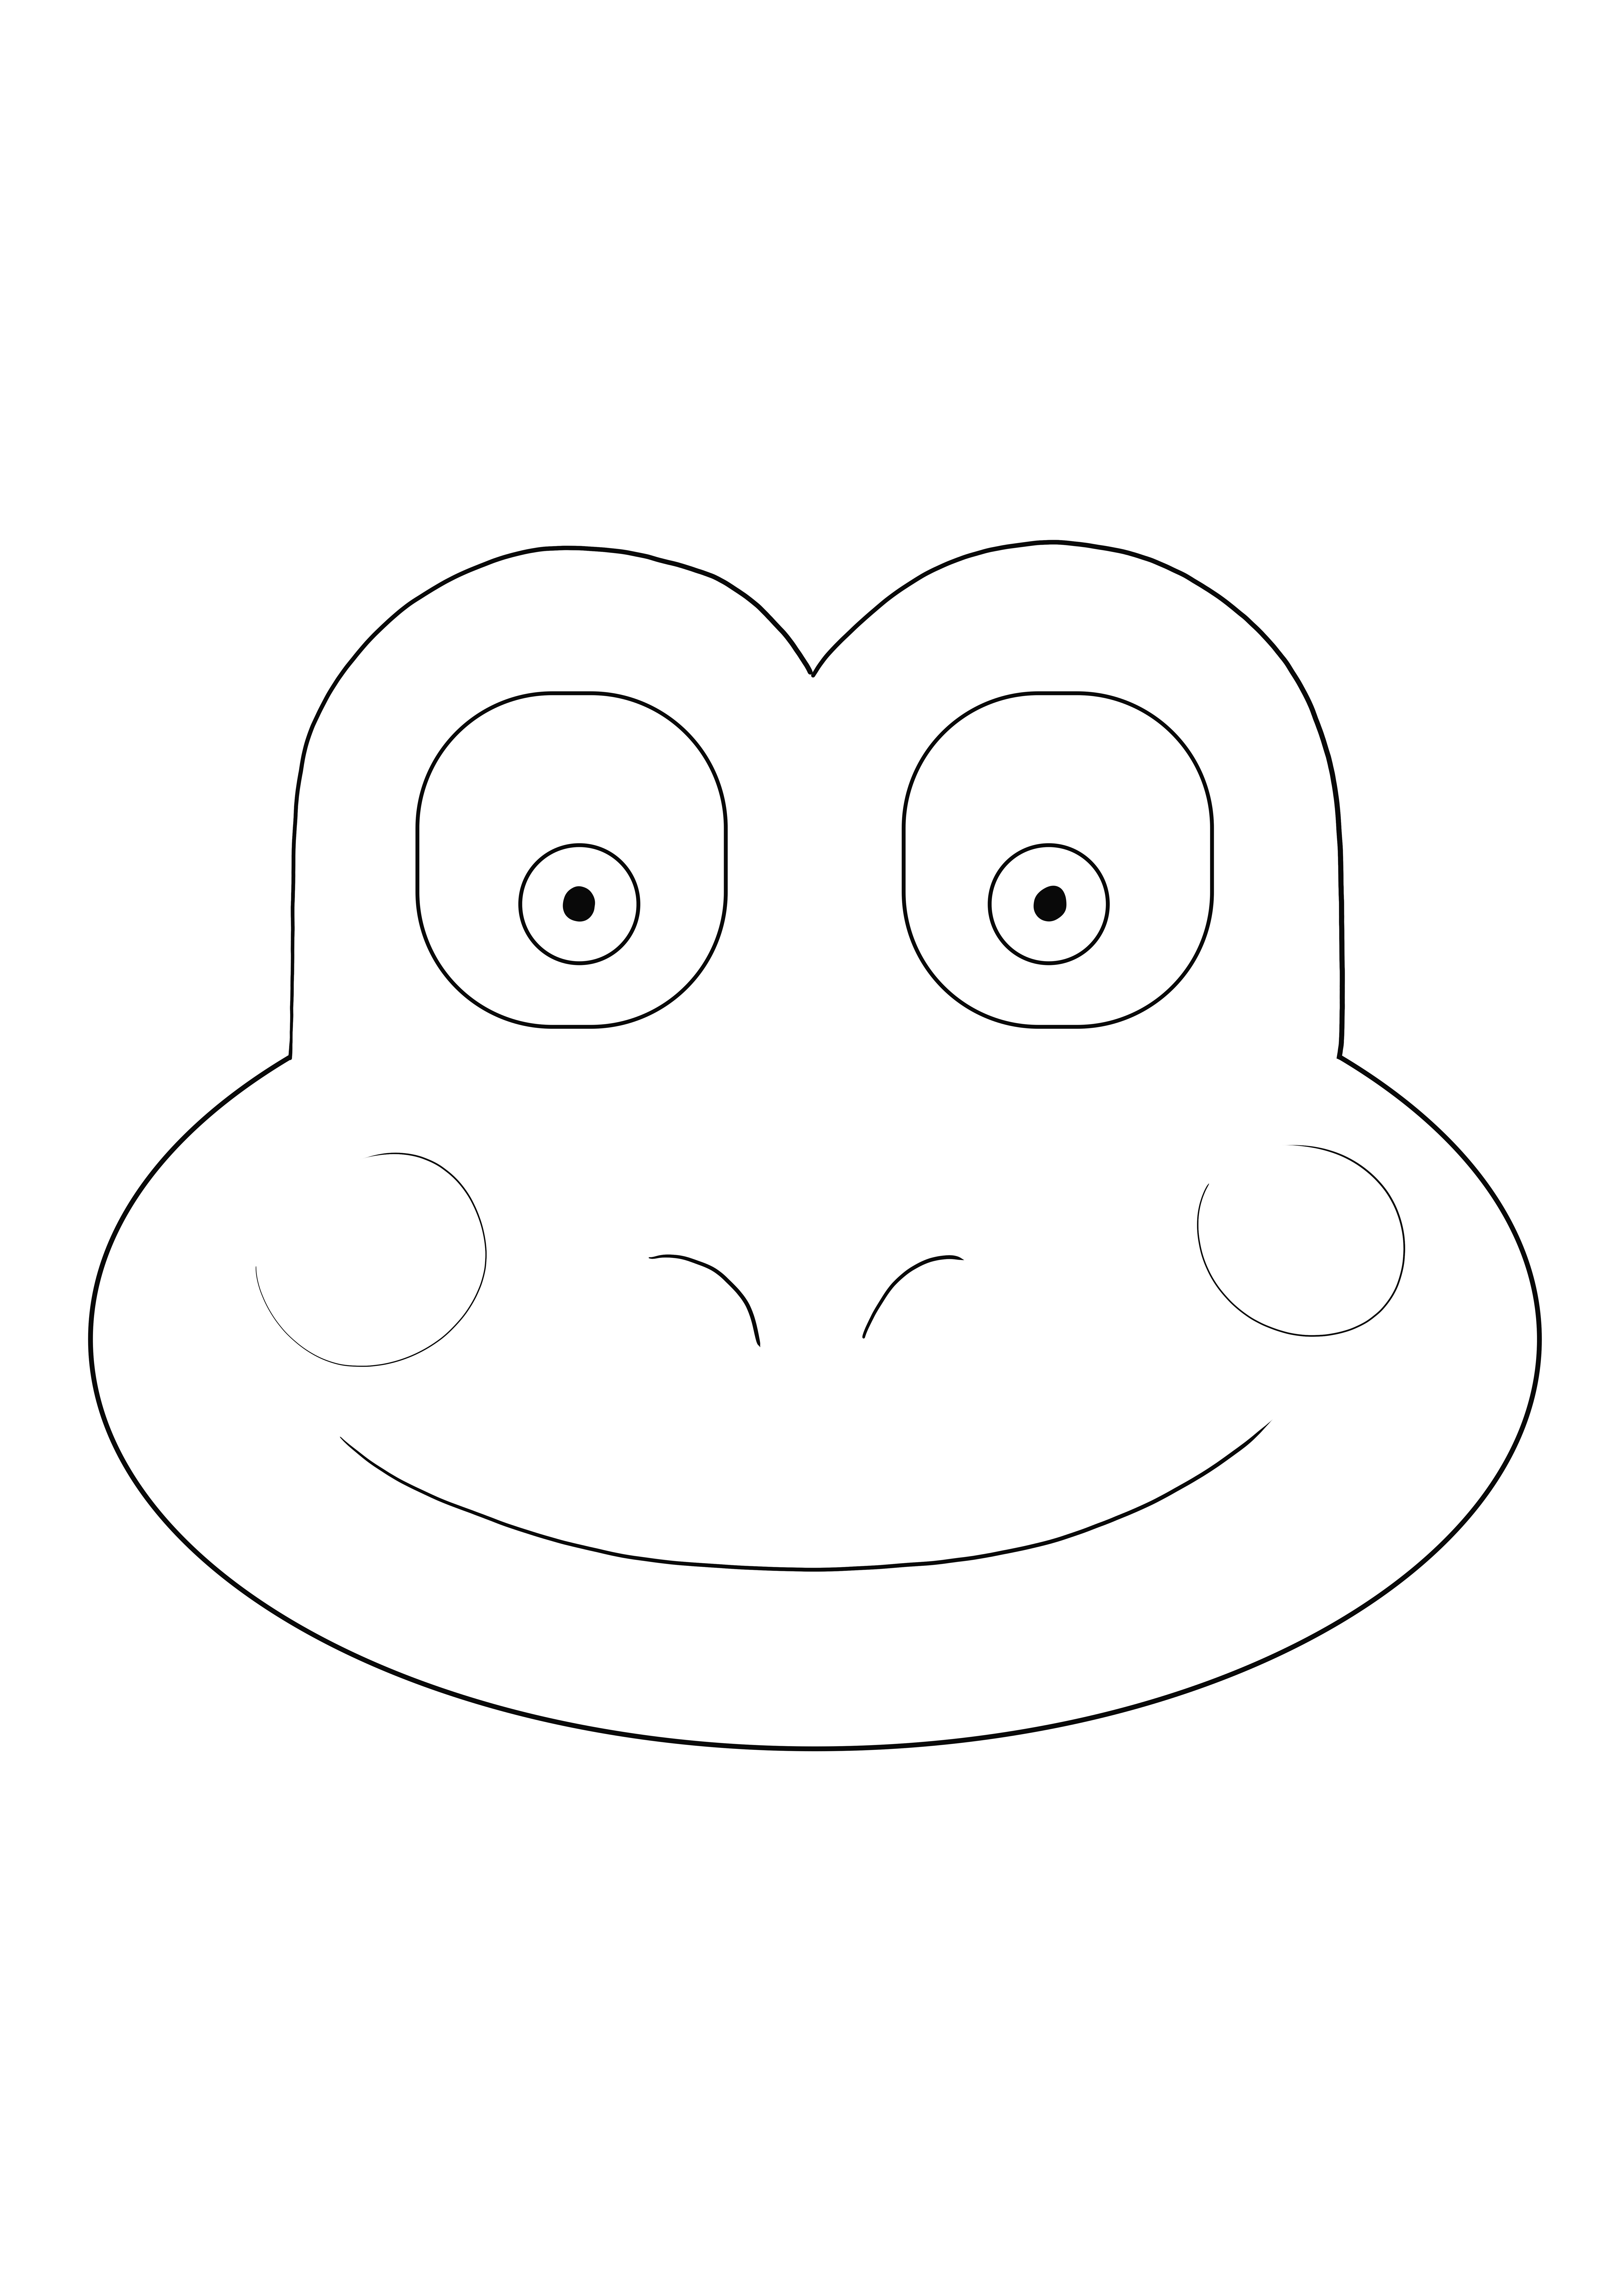 Her yaştan çocuklar için yazdırmak ve indirmek için ücretsiz Kurbağa Yüz boyama sayfası